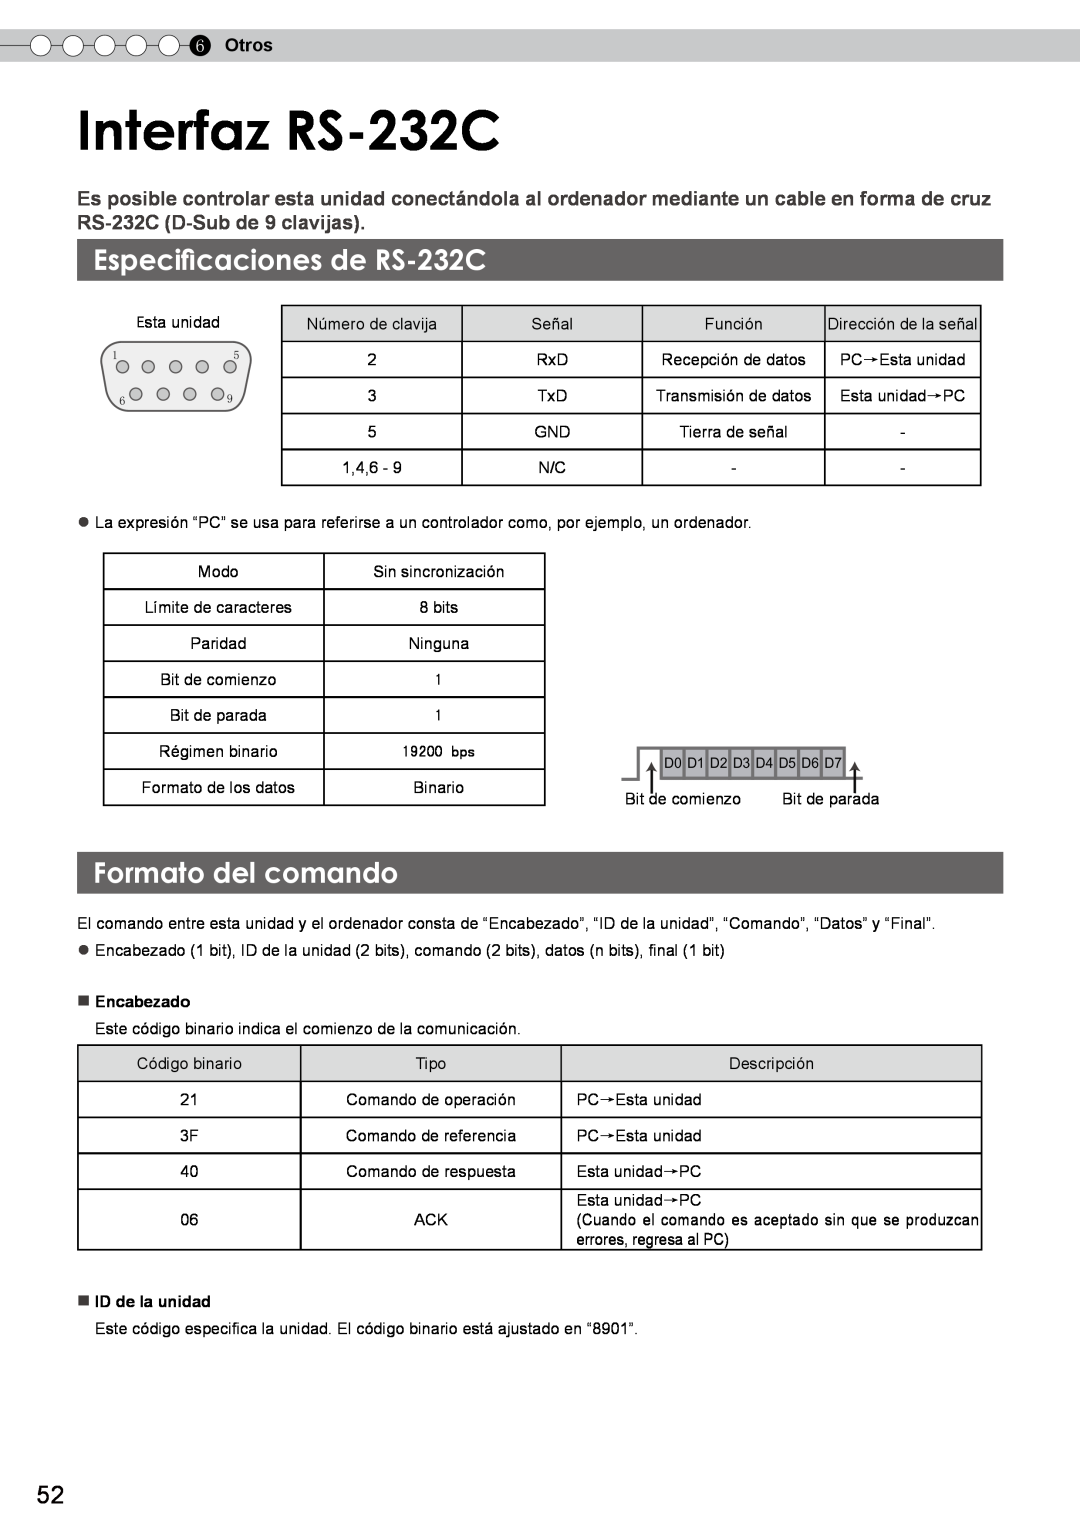 JVC DLA-RS10 manual Interfaz RS-232C, Especificaciones de RS-232C, Formato del comando, Otros 